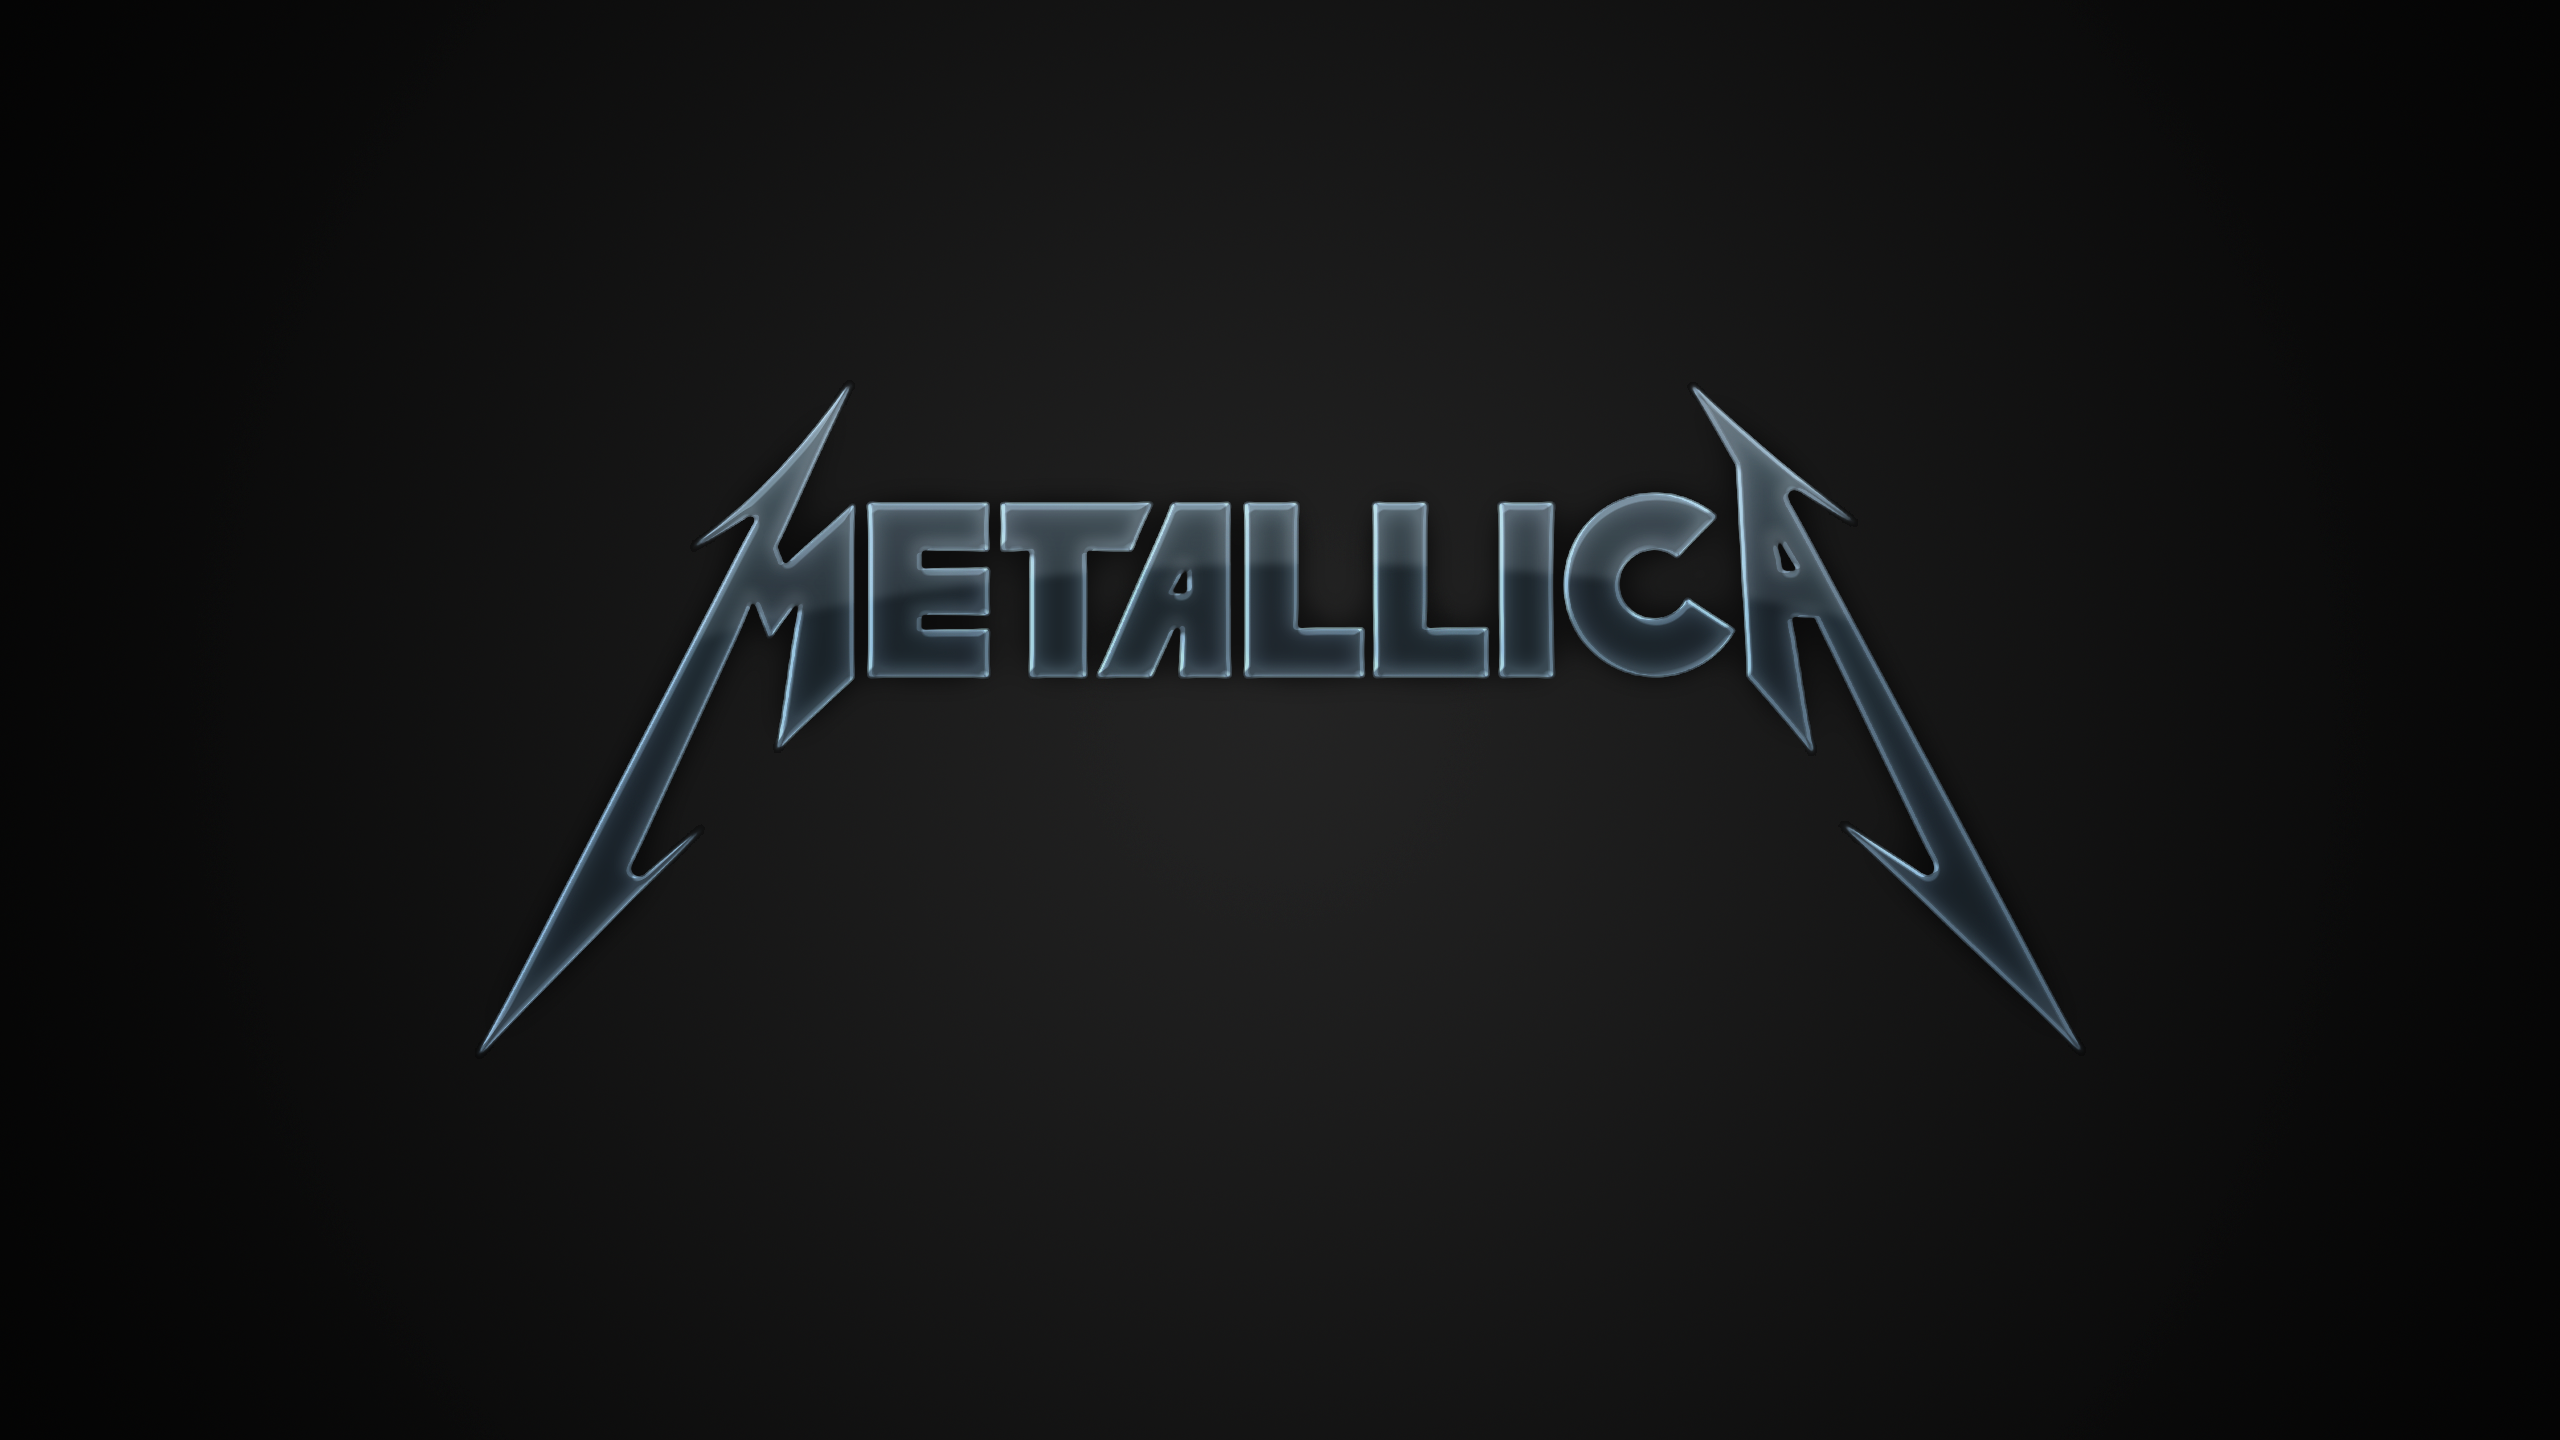 Metallica Wallpaper For iPhone